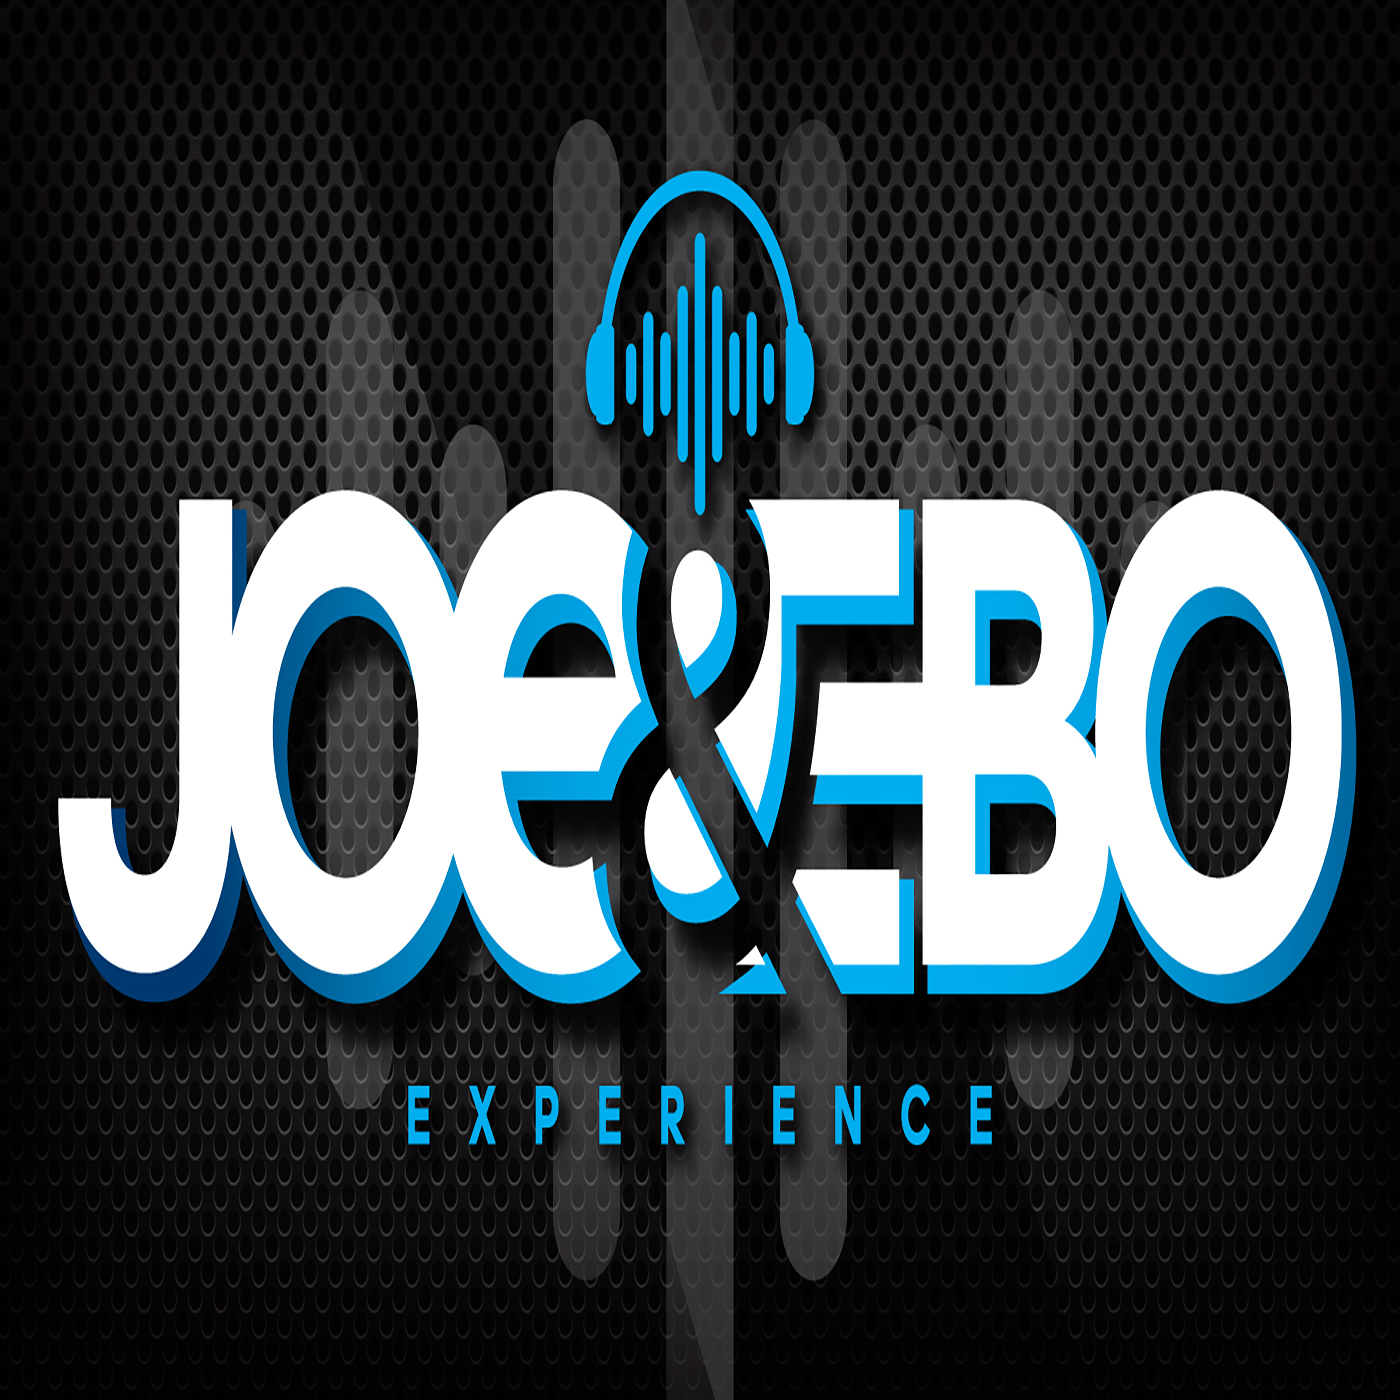 Joe & Ebo Experience: 1 on 1